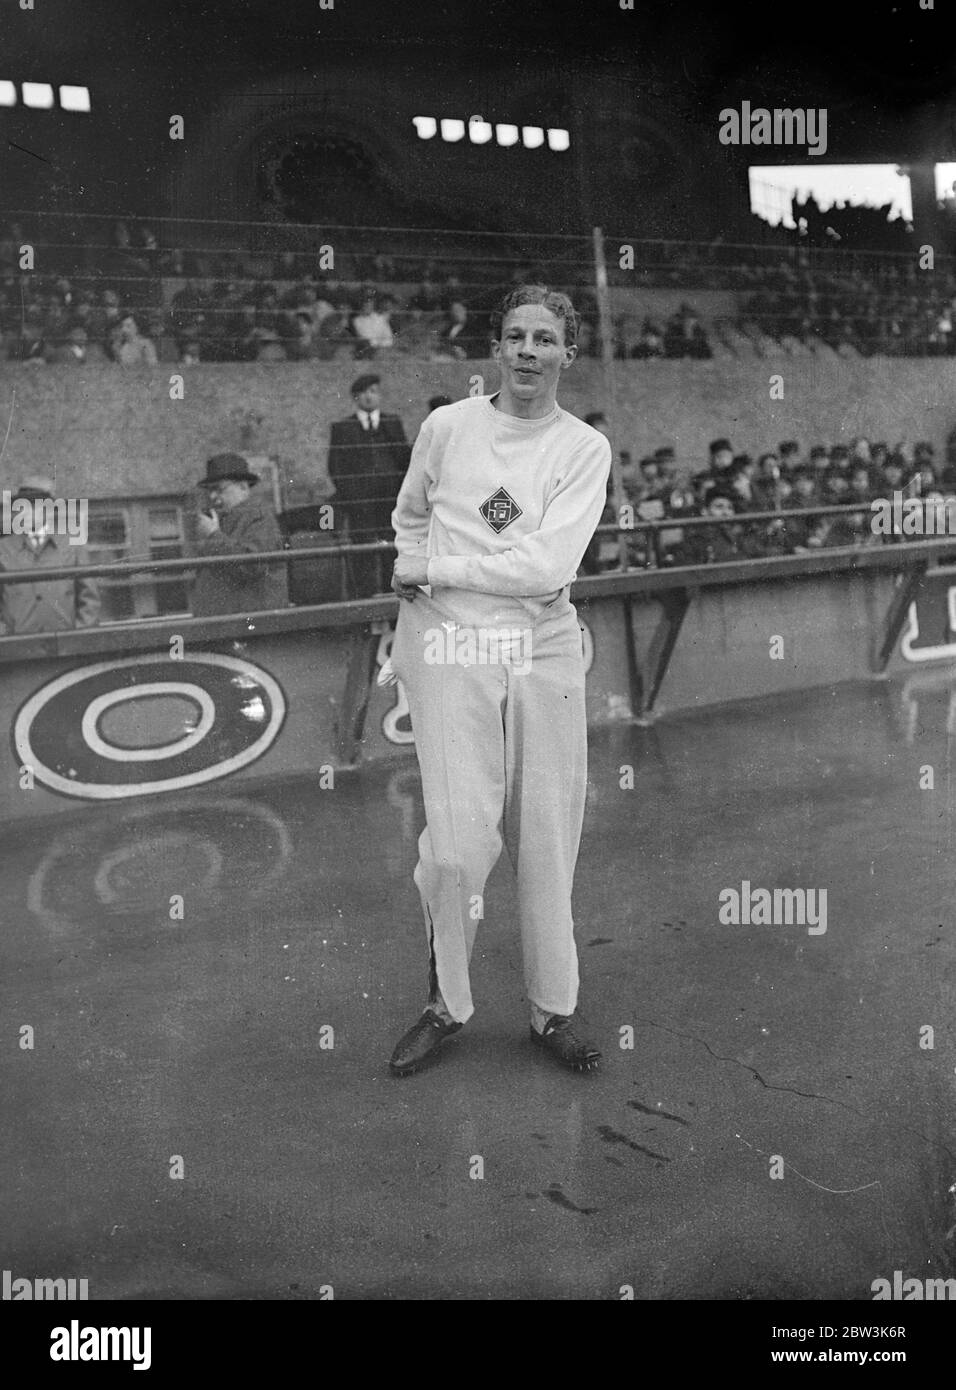 Lovelock führt britische Mannschaft zum Sieg in Paris internationale Staffel . J E Lovelock, EIN G K Brown und viele andere bekannte britische Läufer halfen dem britischen Univesities-Team zum dritten Mal in Folge beim Across Paris Staffellauf zum Sieg. Die britischen Läufer haben nun den von den Organisatoren angebotenen Pokal gewonnen. Die britische Zeit für die 15 1 / 2 Meile Couse war 1 Stunde und 52 2 / 5 Sekunden . Foto zeigt, Jack Lovelock klettert in seine Hose nach dem britischen Sieg. Lovelock war Kapitän des Teams. 27. April 1936 Stockfoto